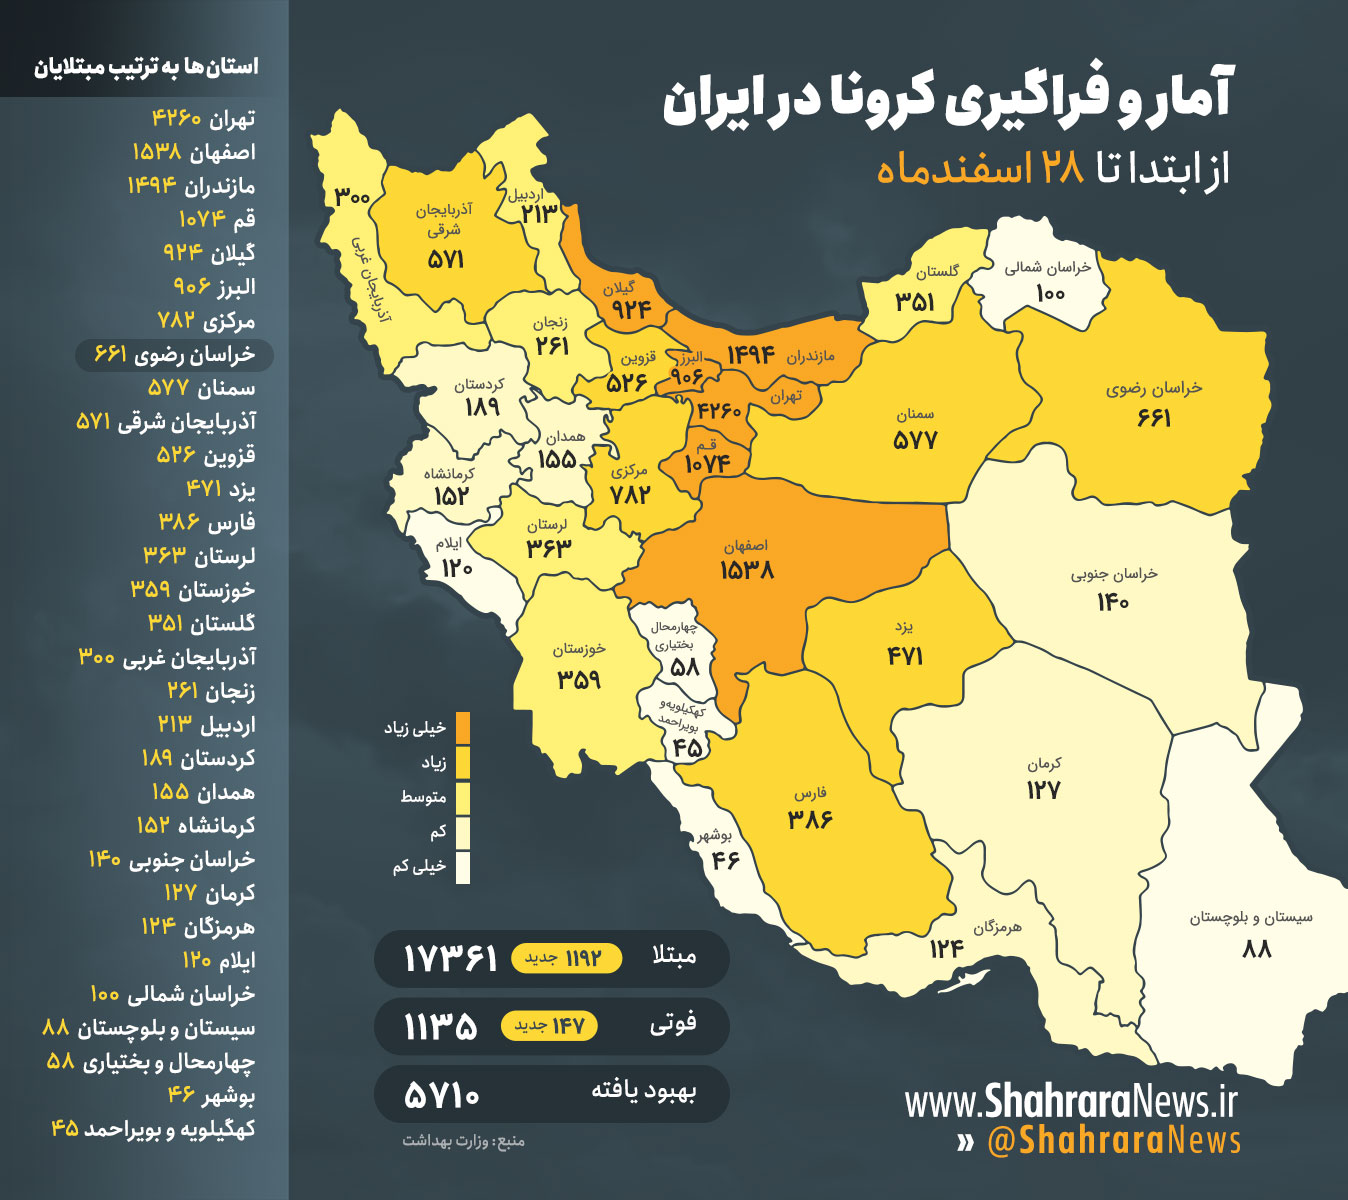 اینفوگرافی / آمار فراگیری کرونا در ایران